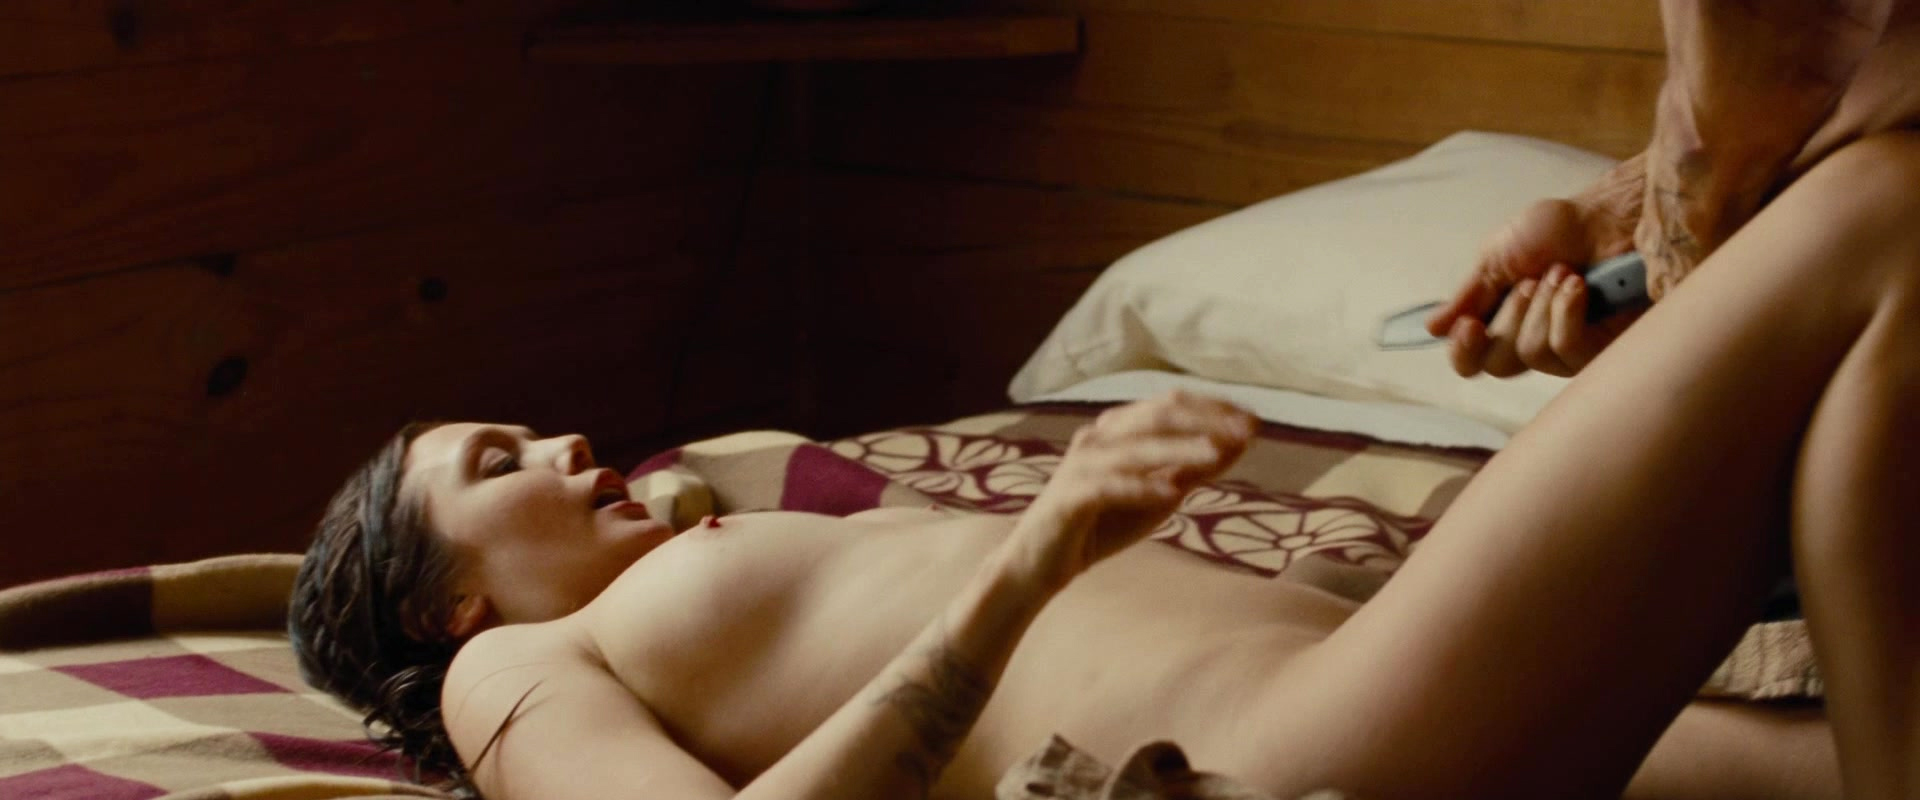 Elizabeth Olsen (23 years) in famous nude scene from Oldboy (2013). 